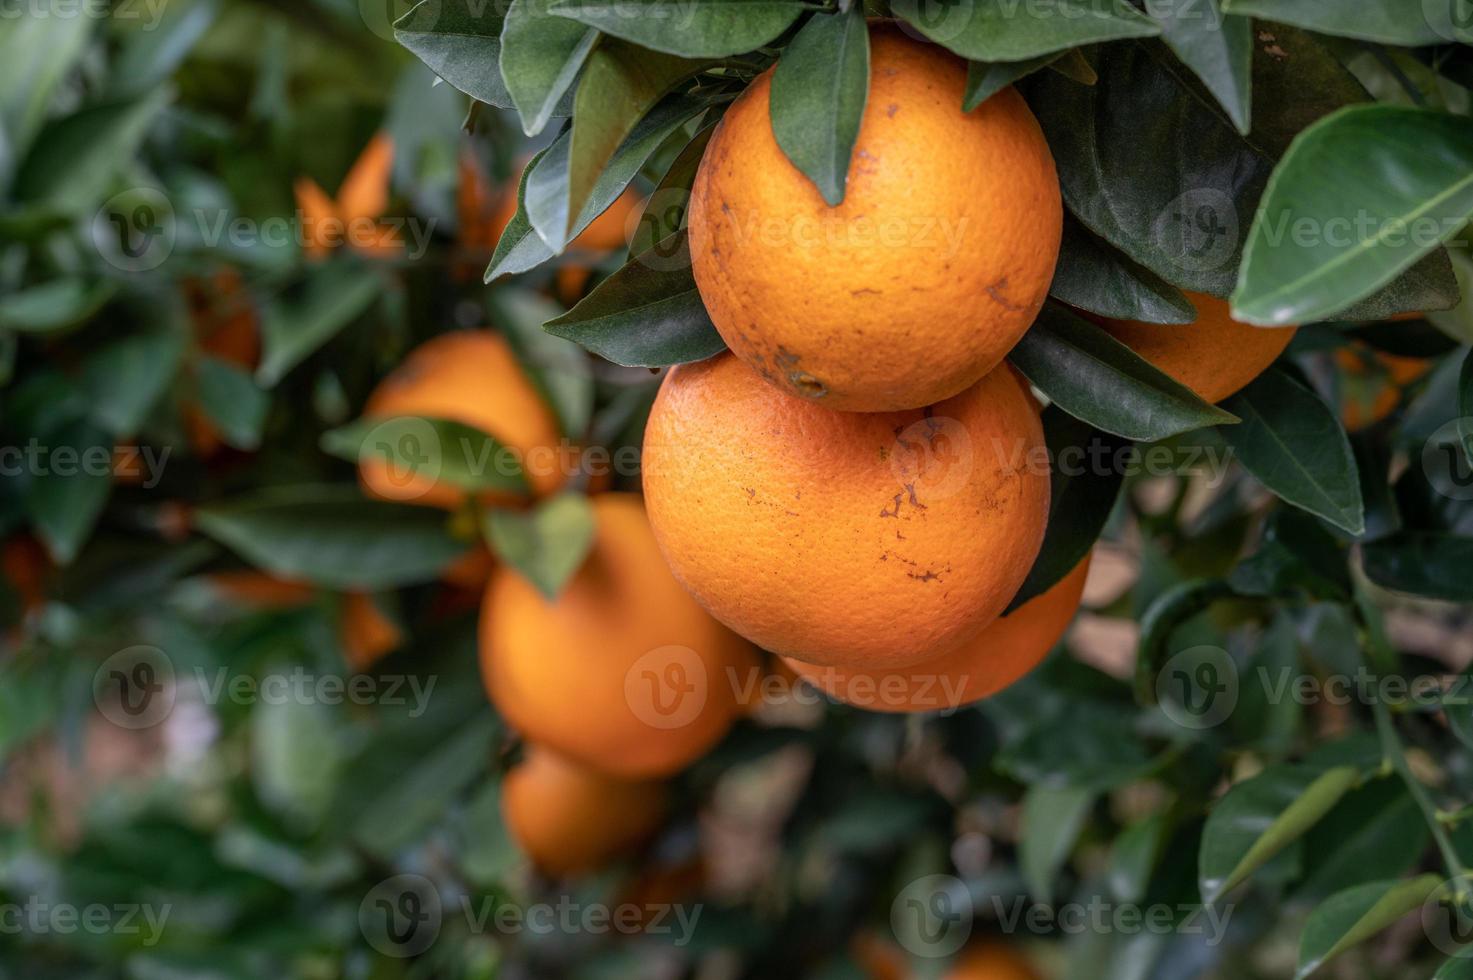 cerrar naranjas doradas colgando de ramas y hojas verdes foto